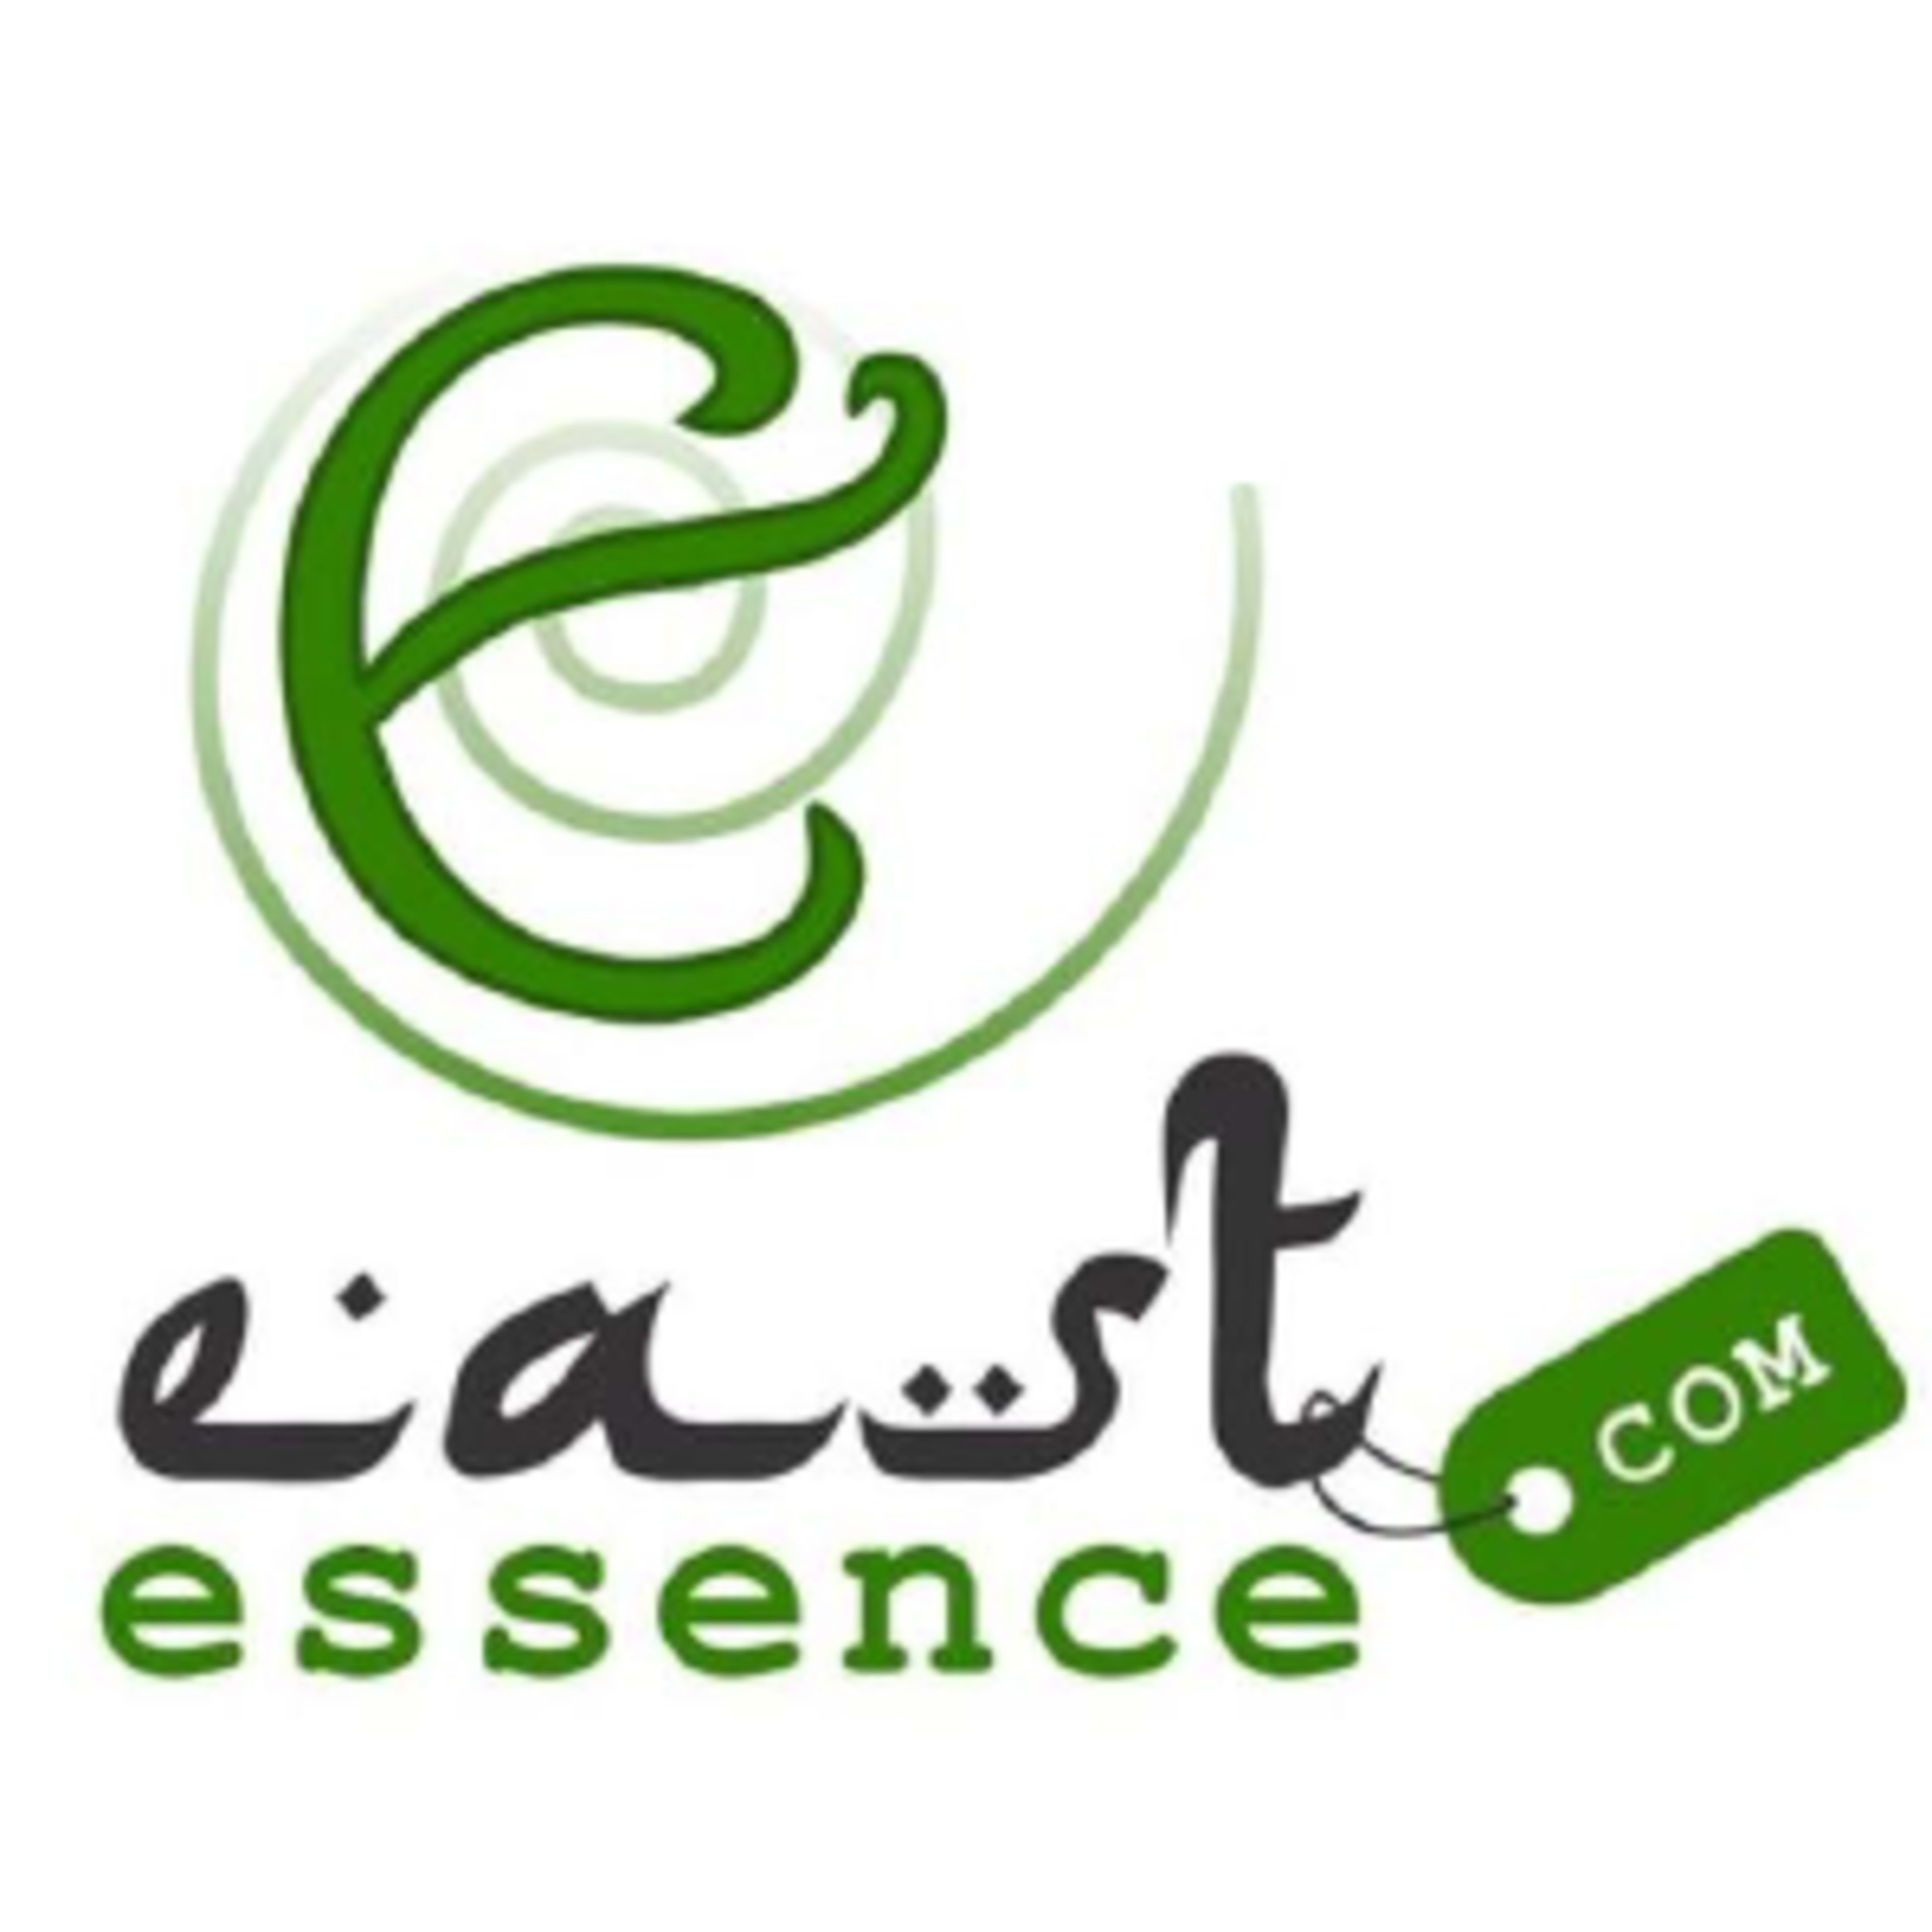 EastEssence.com Code